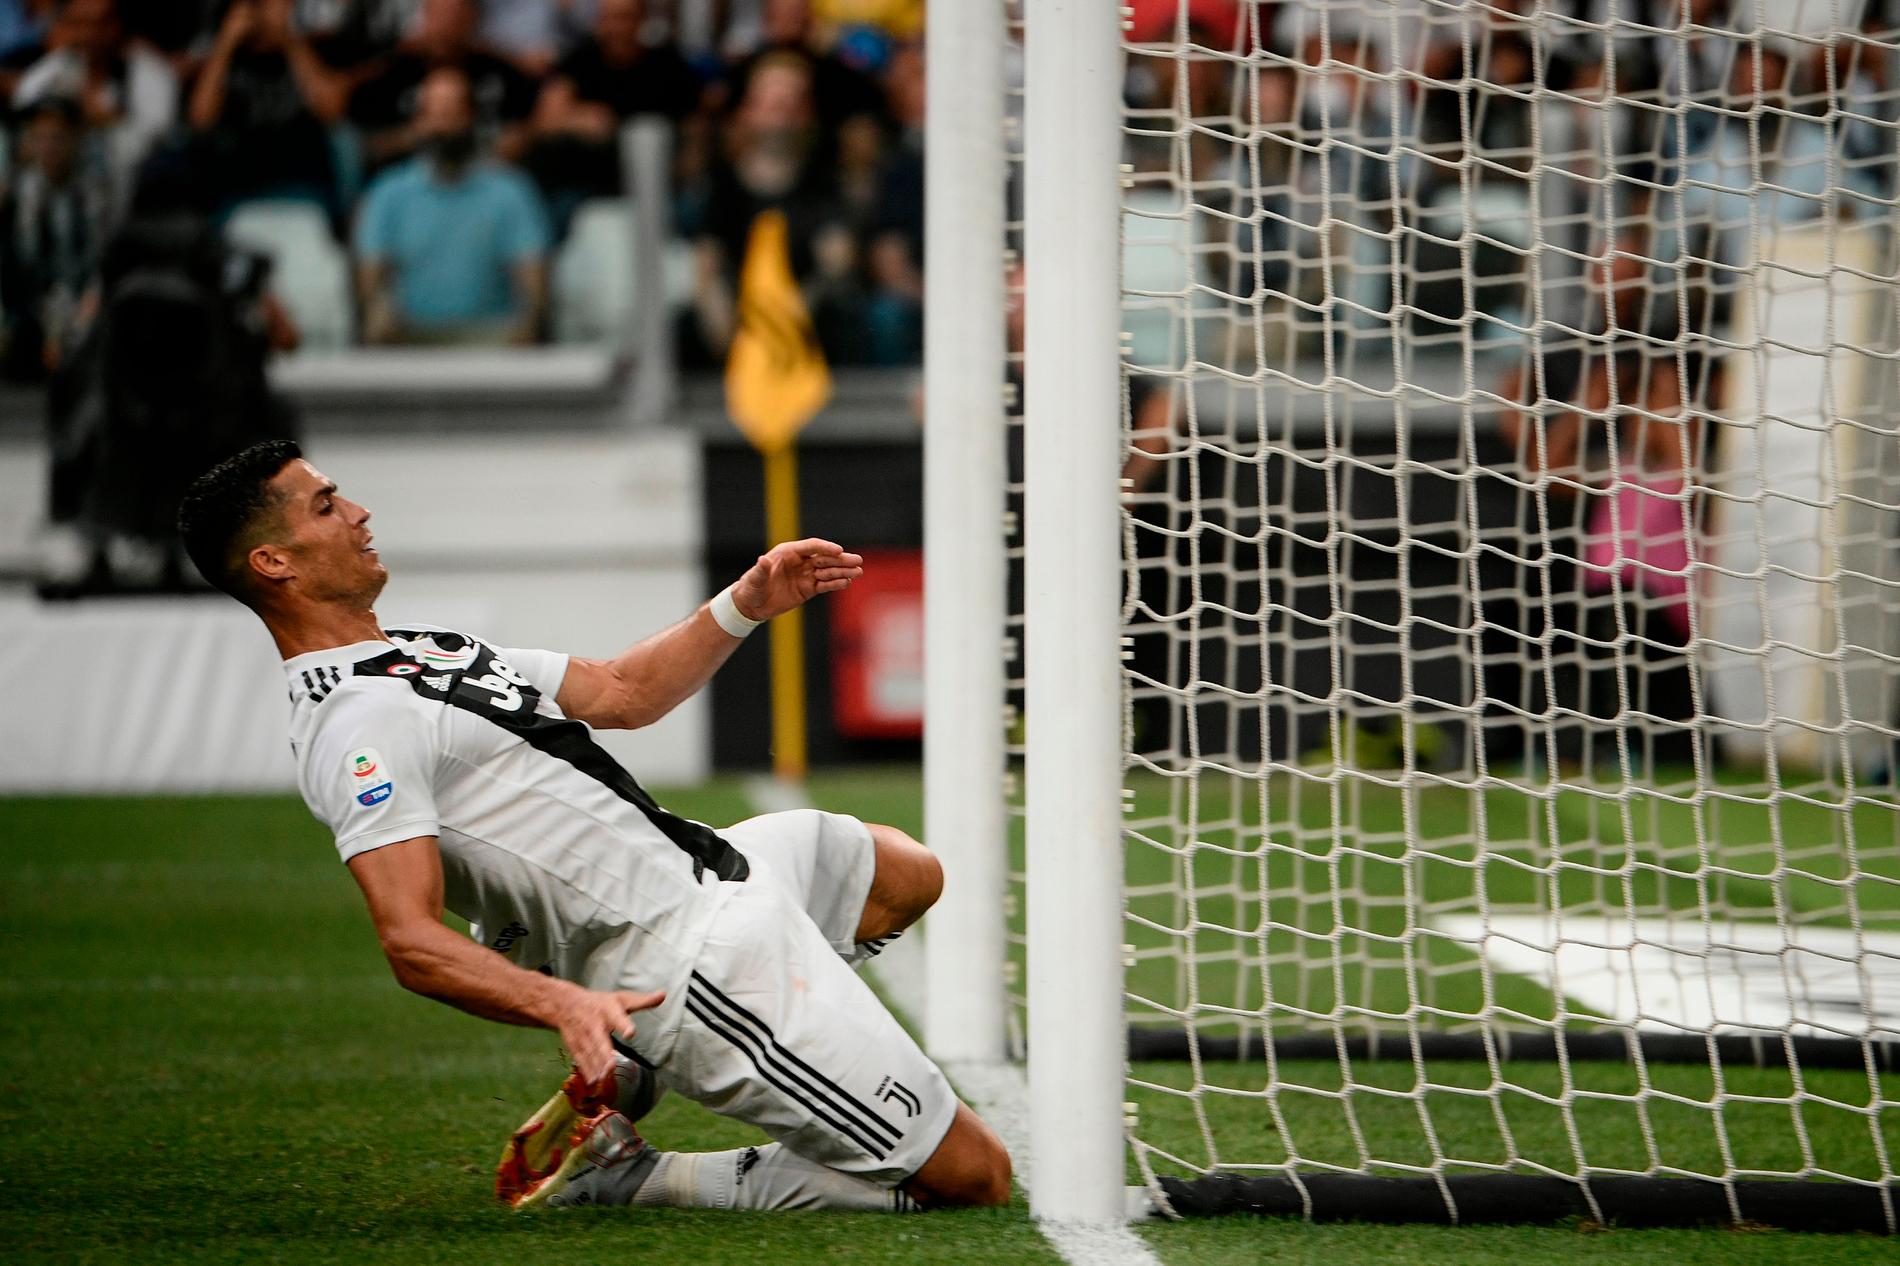 Ronaldo tar sig glidande in över mållinjen efter en målchans, men hans avslut väntar ännu på att göra detsamma.